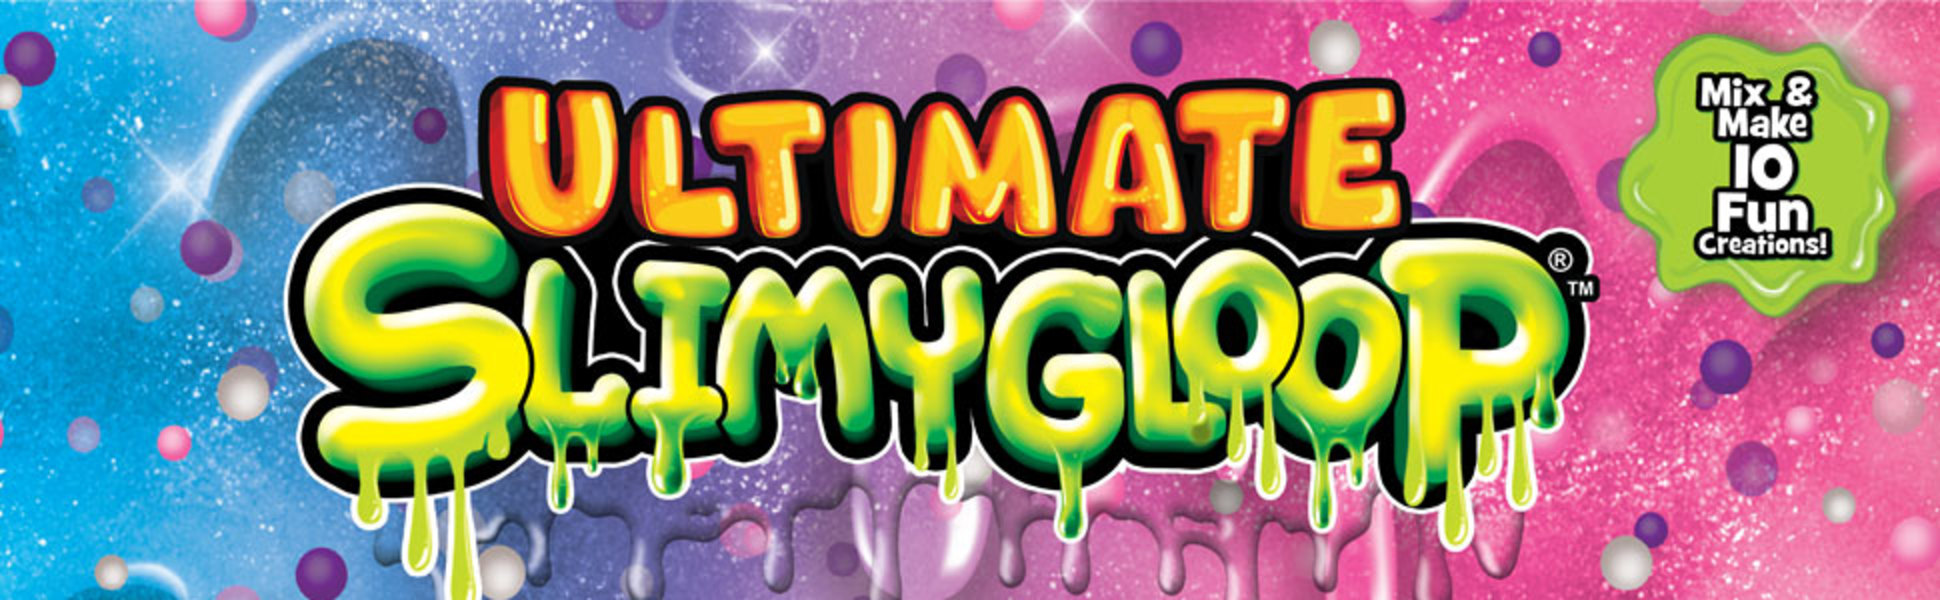 Ultimate SlimyGloop Kit Slime Kids Science Game Easy To Mix Make Horizon